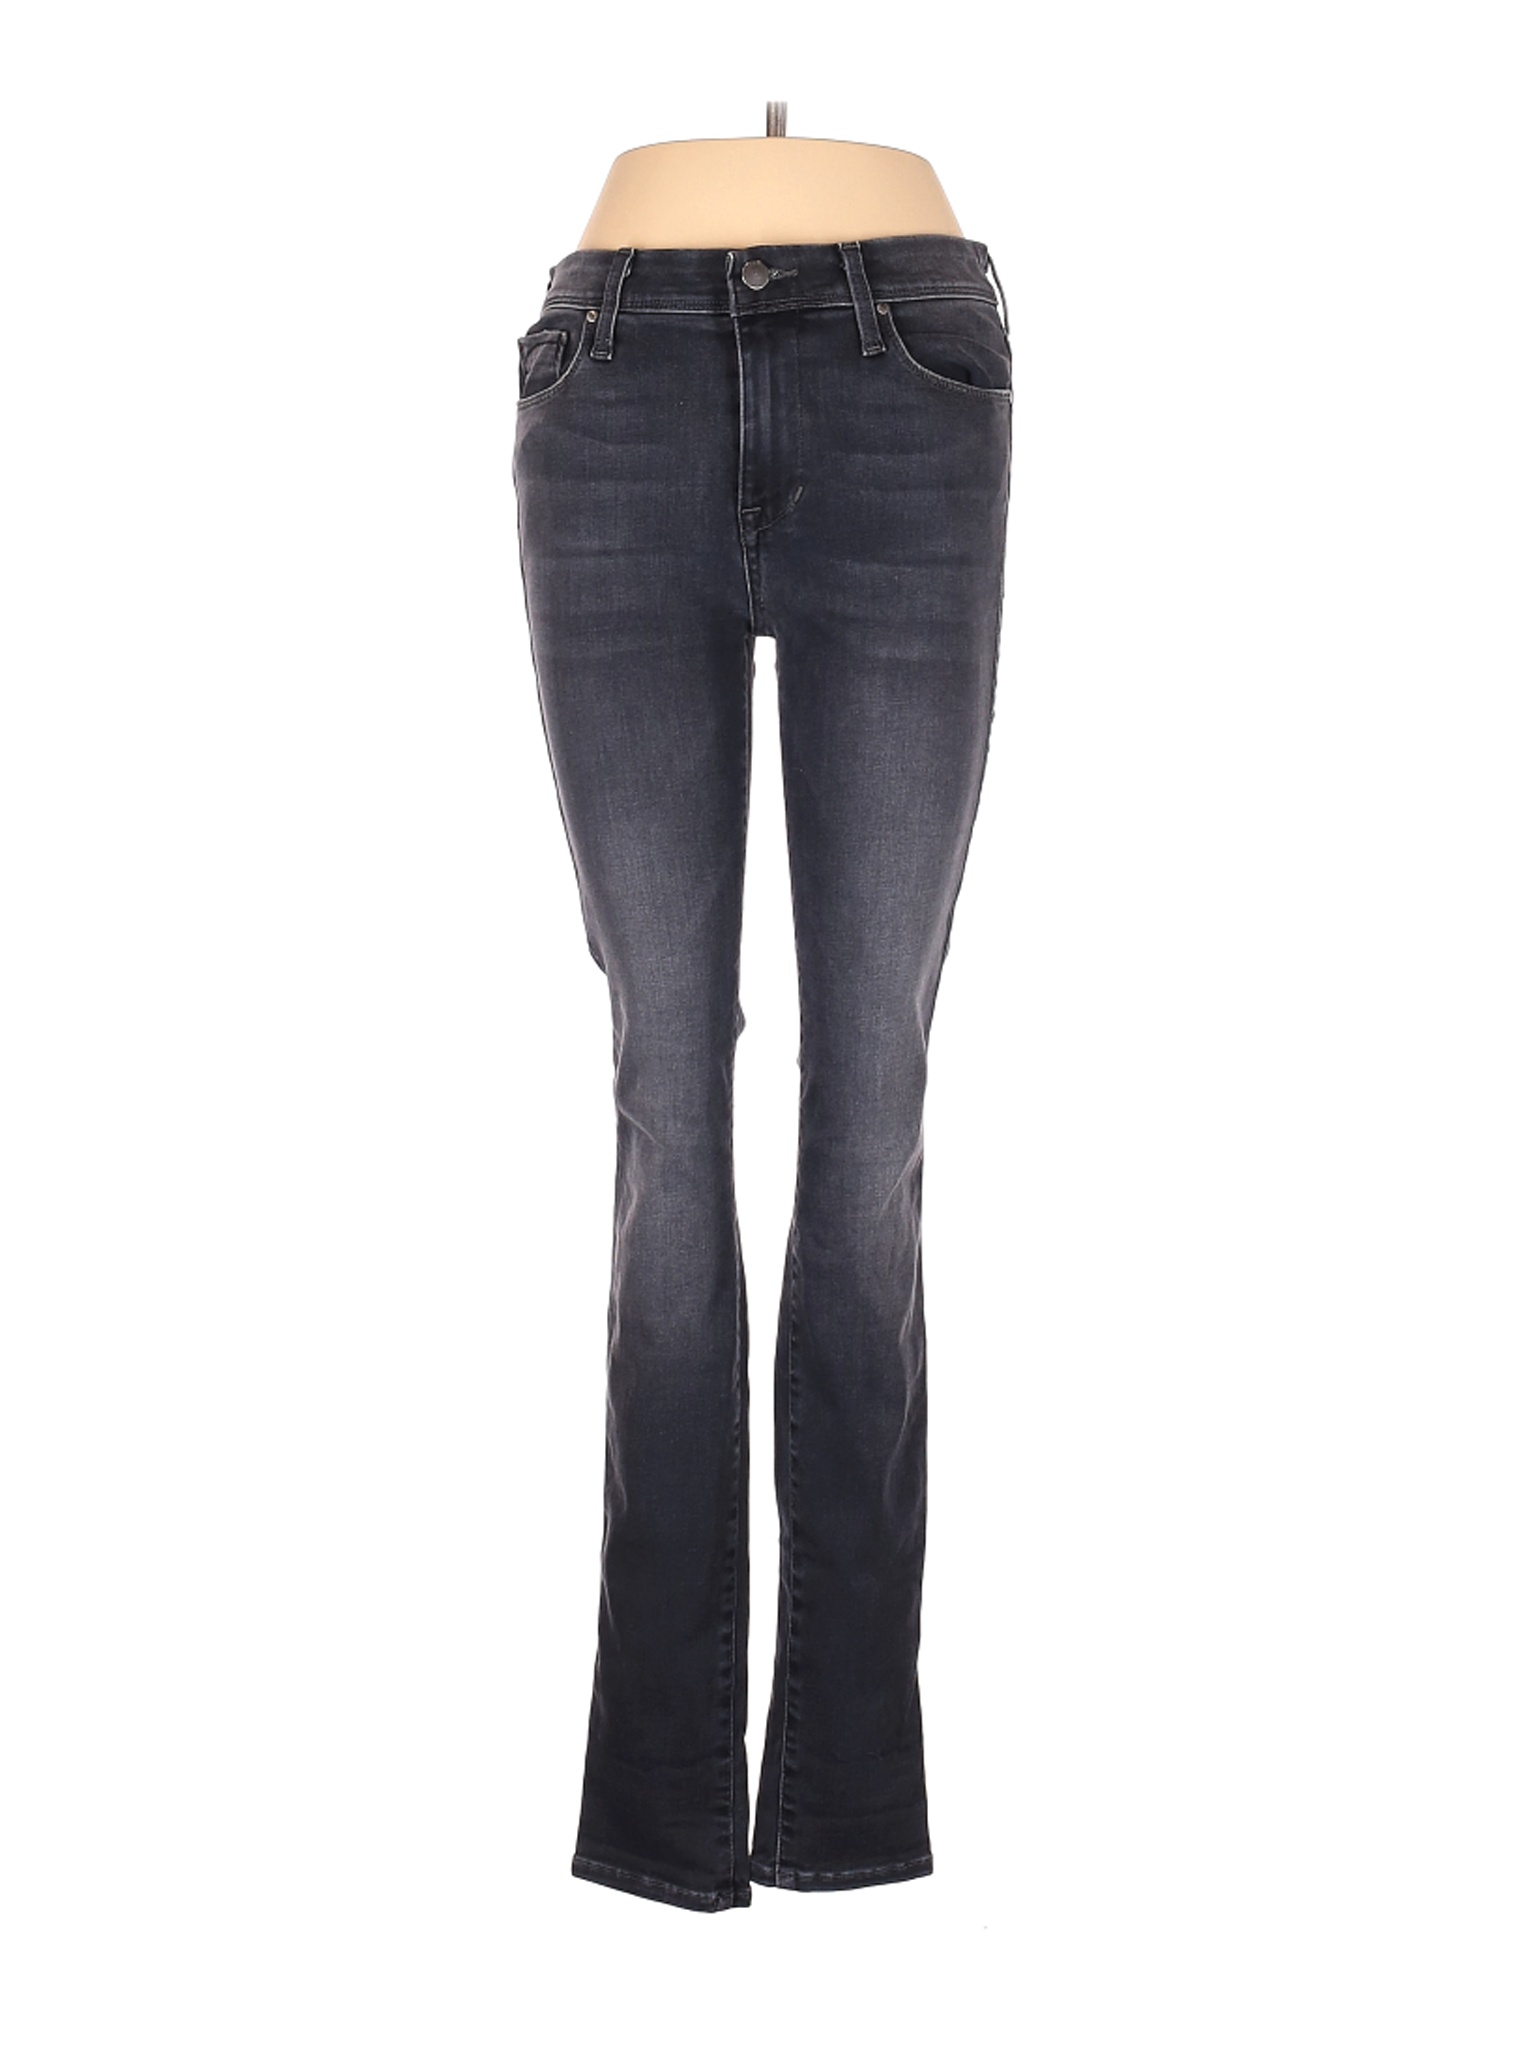 Fidelity Denim Women Blue Jeans 28W | eBay